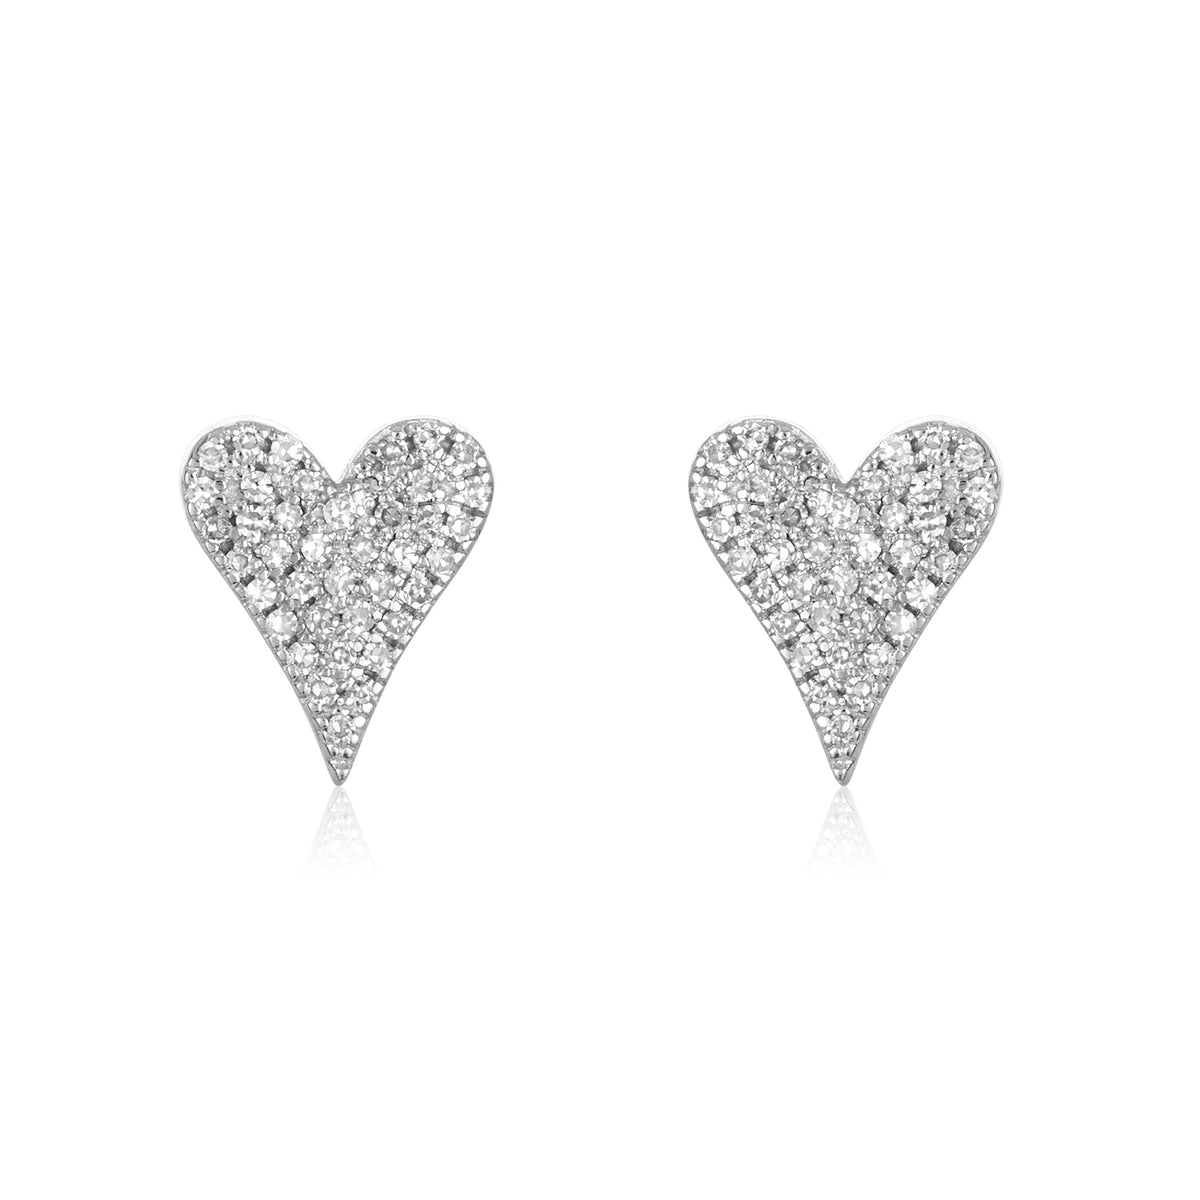 Pave Diamond Heart Studs | Mabel Chong